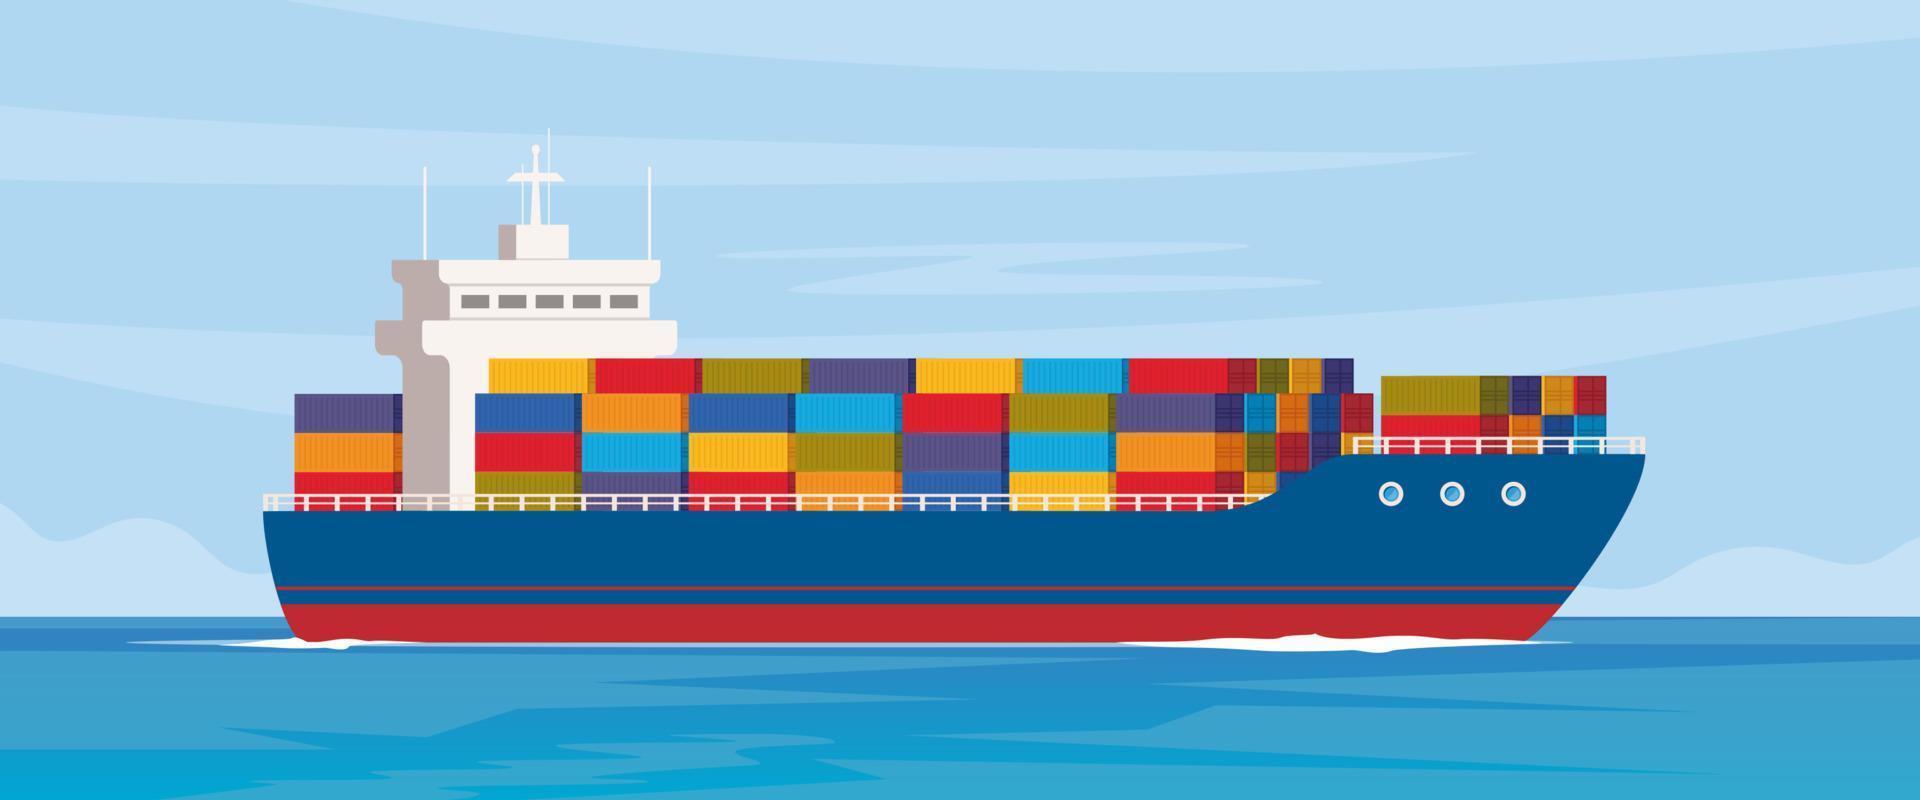 Frachtschiff mit Containern im Ozean. lieferung, transport, versand frachtverkehr. Logistik-Konzept-Vektor-Illustration. vektor